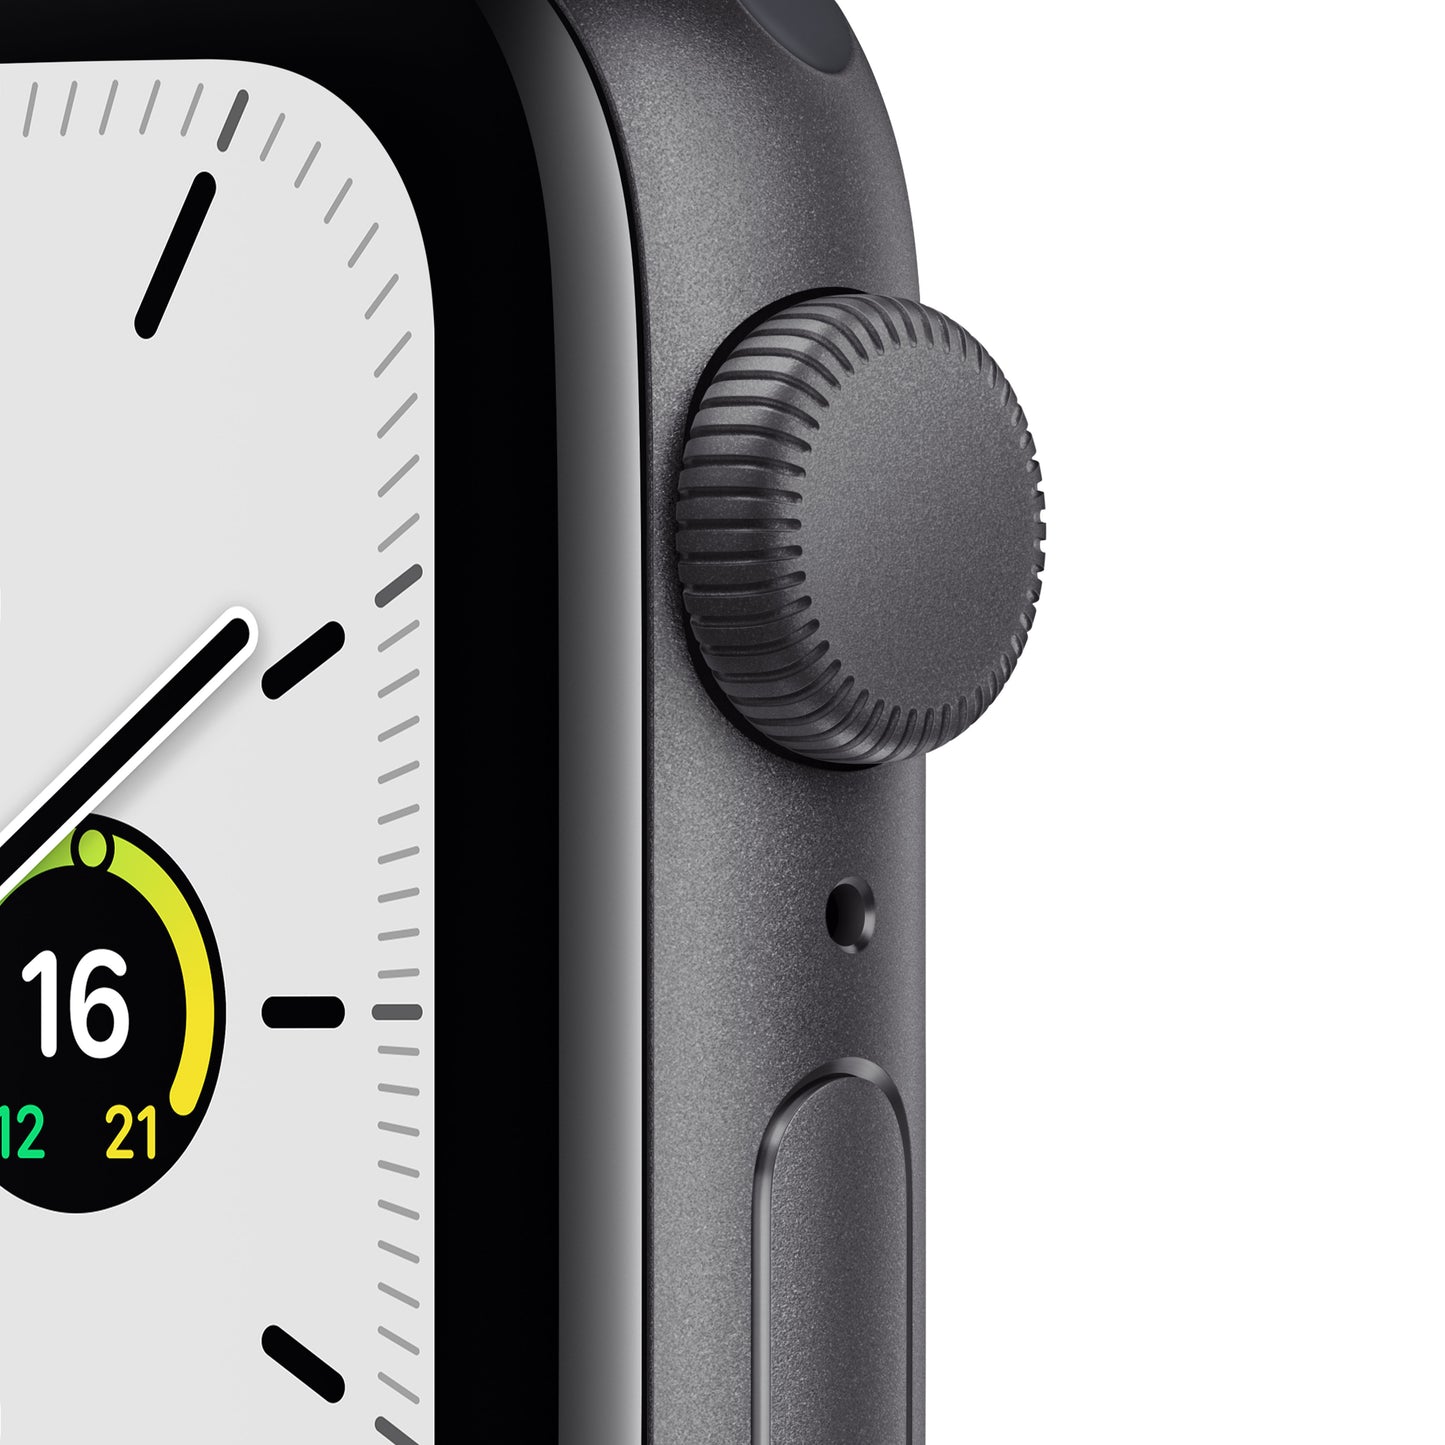 Apple Watch SE (GPS) - Caja de aluminio en gris espacial de 40 mm - Correa deportiva en color medianoche - Talla única